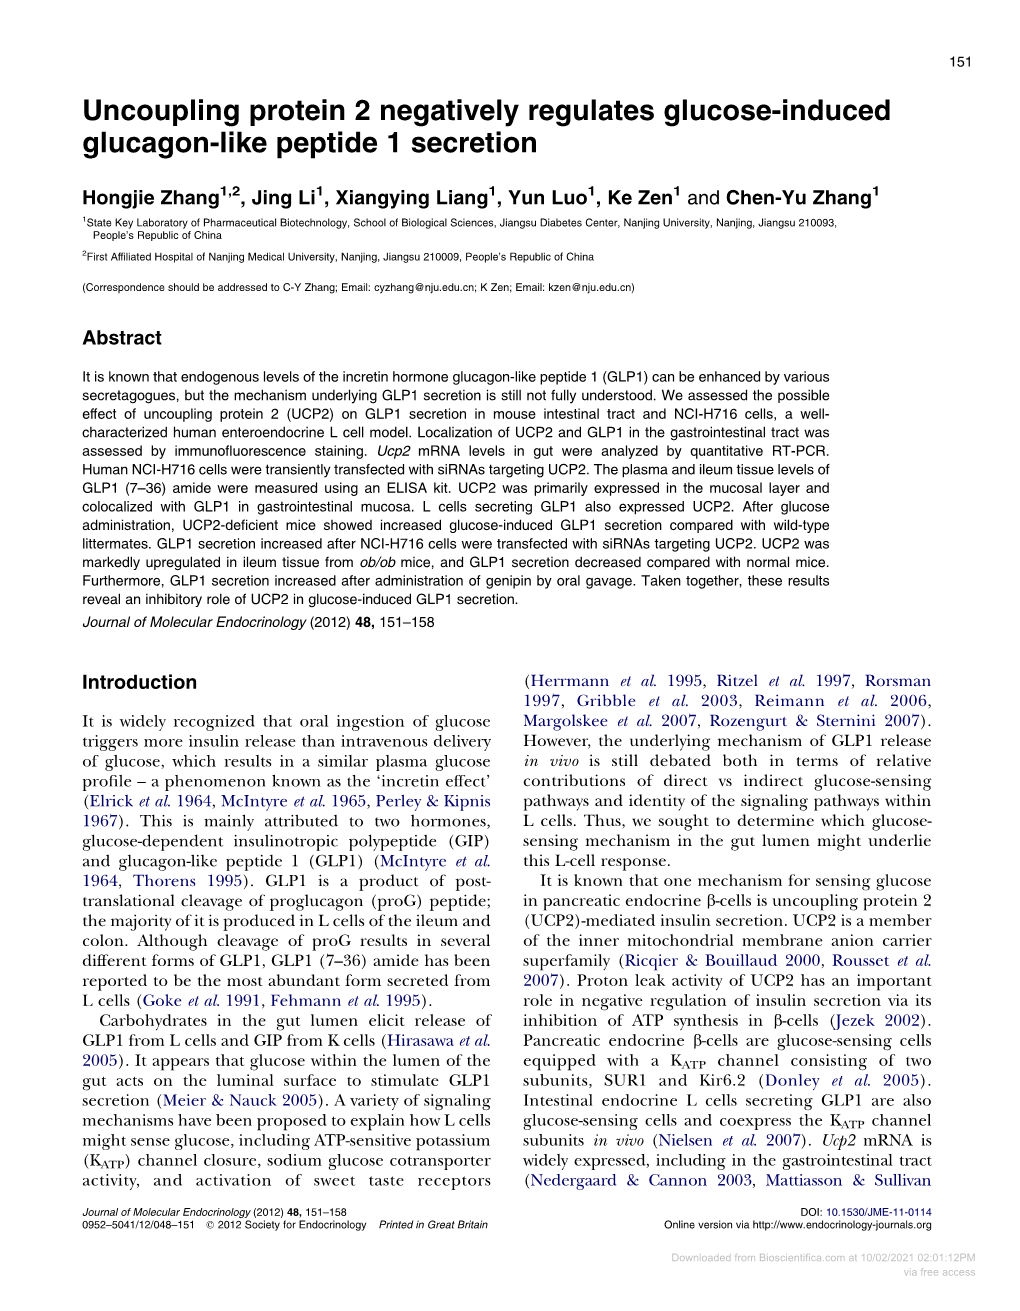 Uncoupling Protein 2 Negatively Regulates Glucose-Induced Glucagon-Like Peptide 1 Secretion